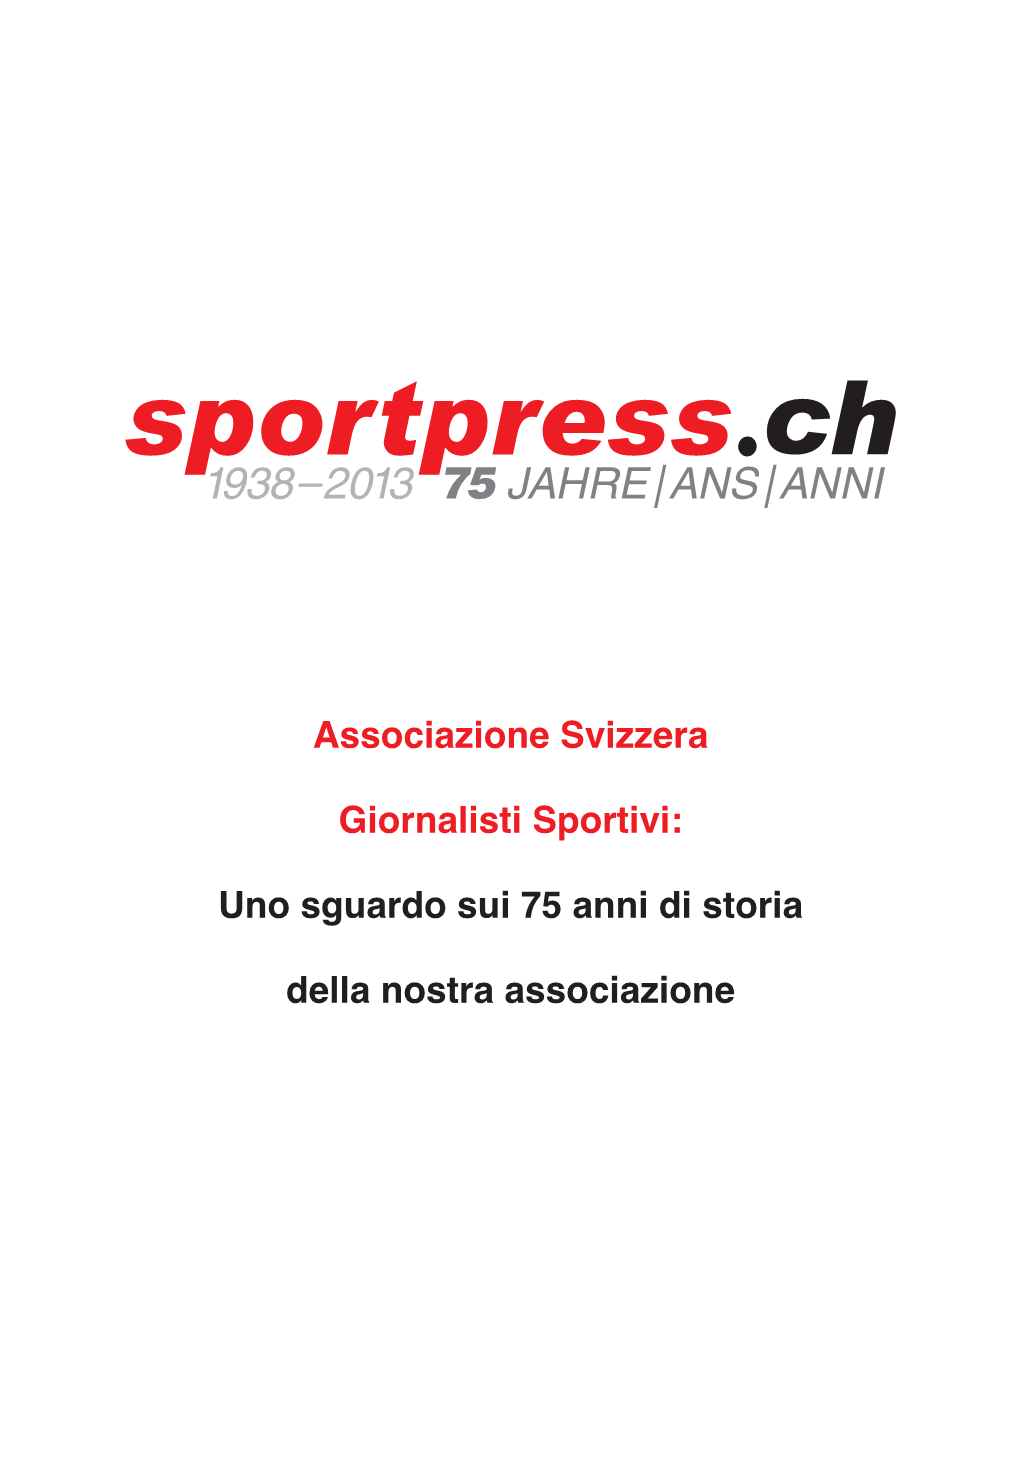 Associazione Svizzera Giornalisti Sportivi Continua Con Im­ Mutato Fervore a Operare Per Il Bene Di Tutti Gli Associati